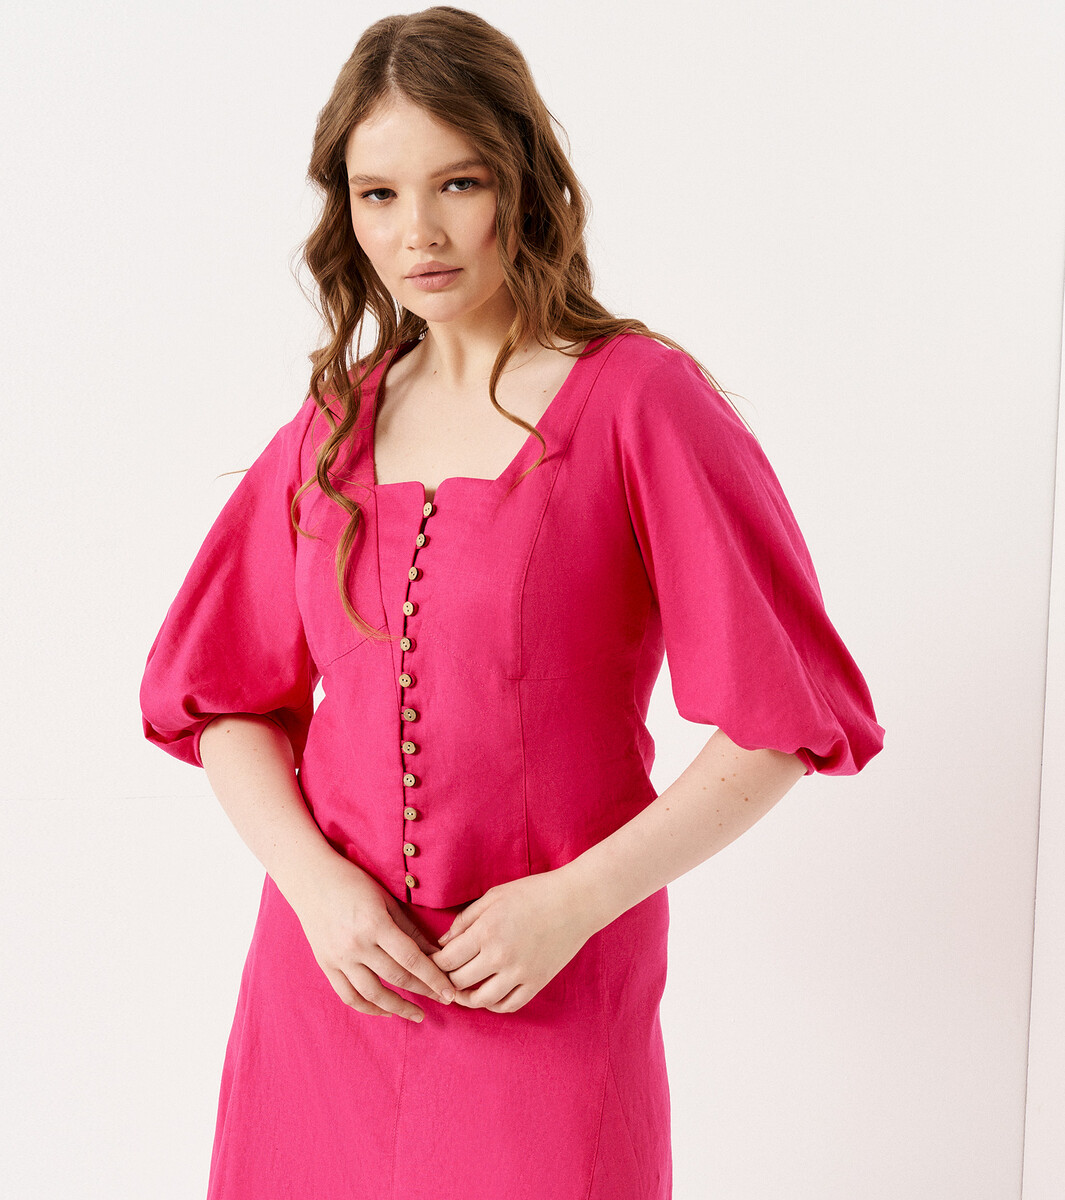 Комплект женский (блузка, юбка) Panda, размер 46, цвет розовый 02528540 - фото 2